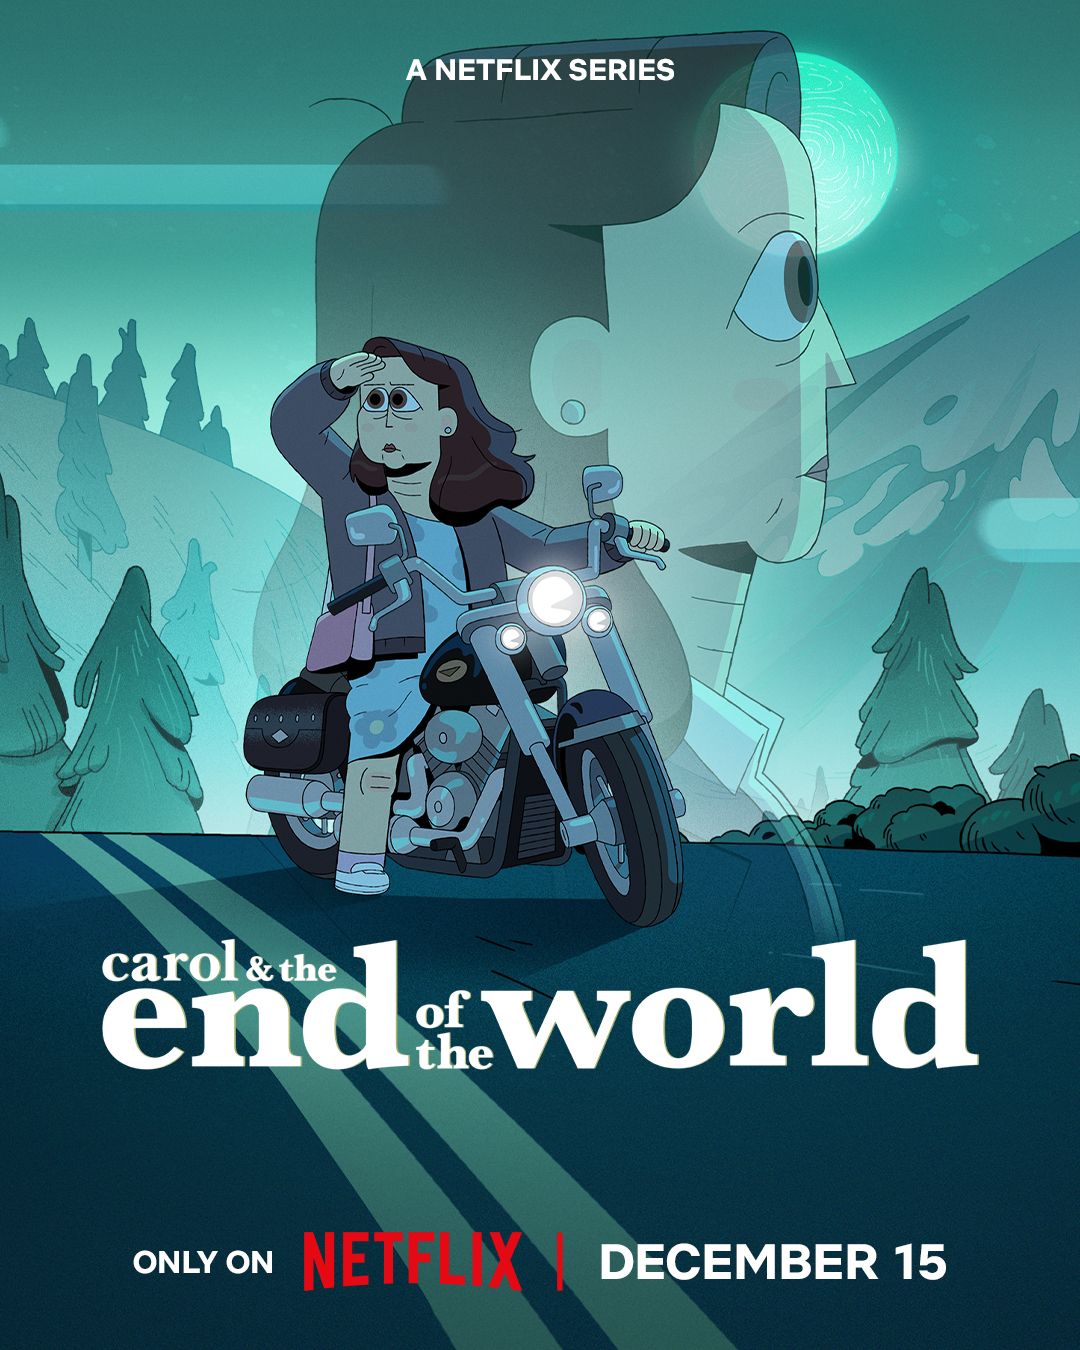 Pôster de Carol e o fim do mundo, série animada, o pôster traz uma mulher em uma motocicleta sobreposta a uma imagem dela mesma olhando uma paisagem montanhosa.  Apresenta a data de lançamento do Netflix, 15 de dezembro, na parte inferior.